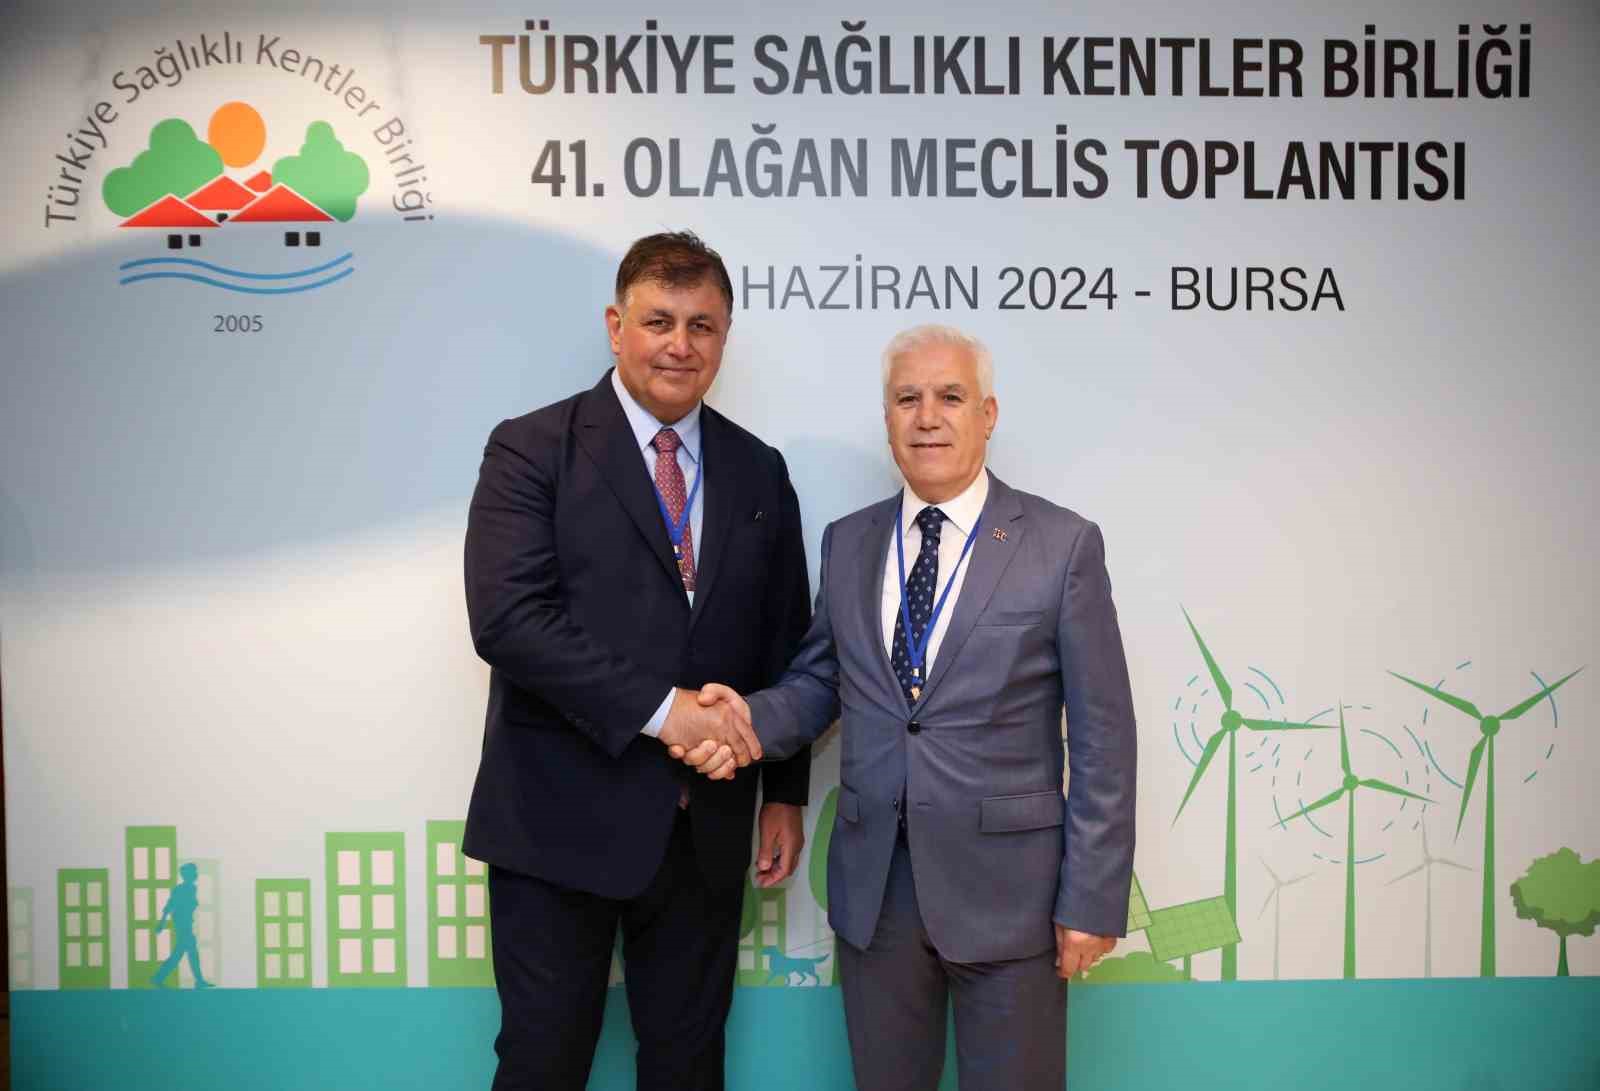 Sağlıklı Kentler Birliği Başkanlığı’na İzmir Büyükşehir Belediye Başkanı Cemil Tugay seçildi